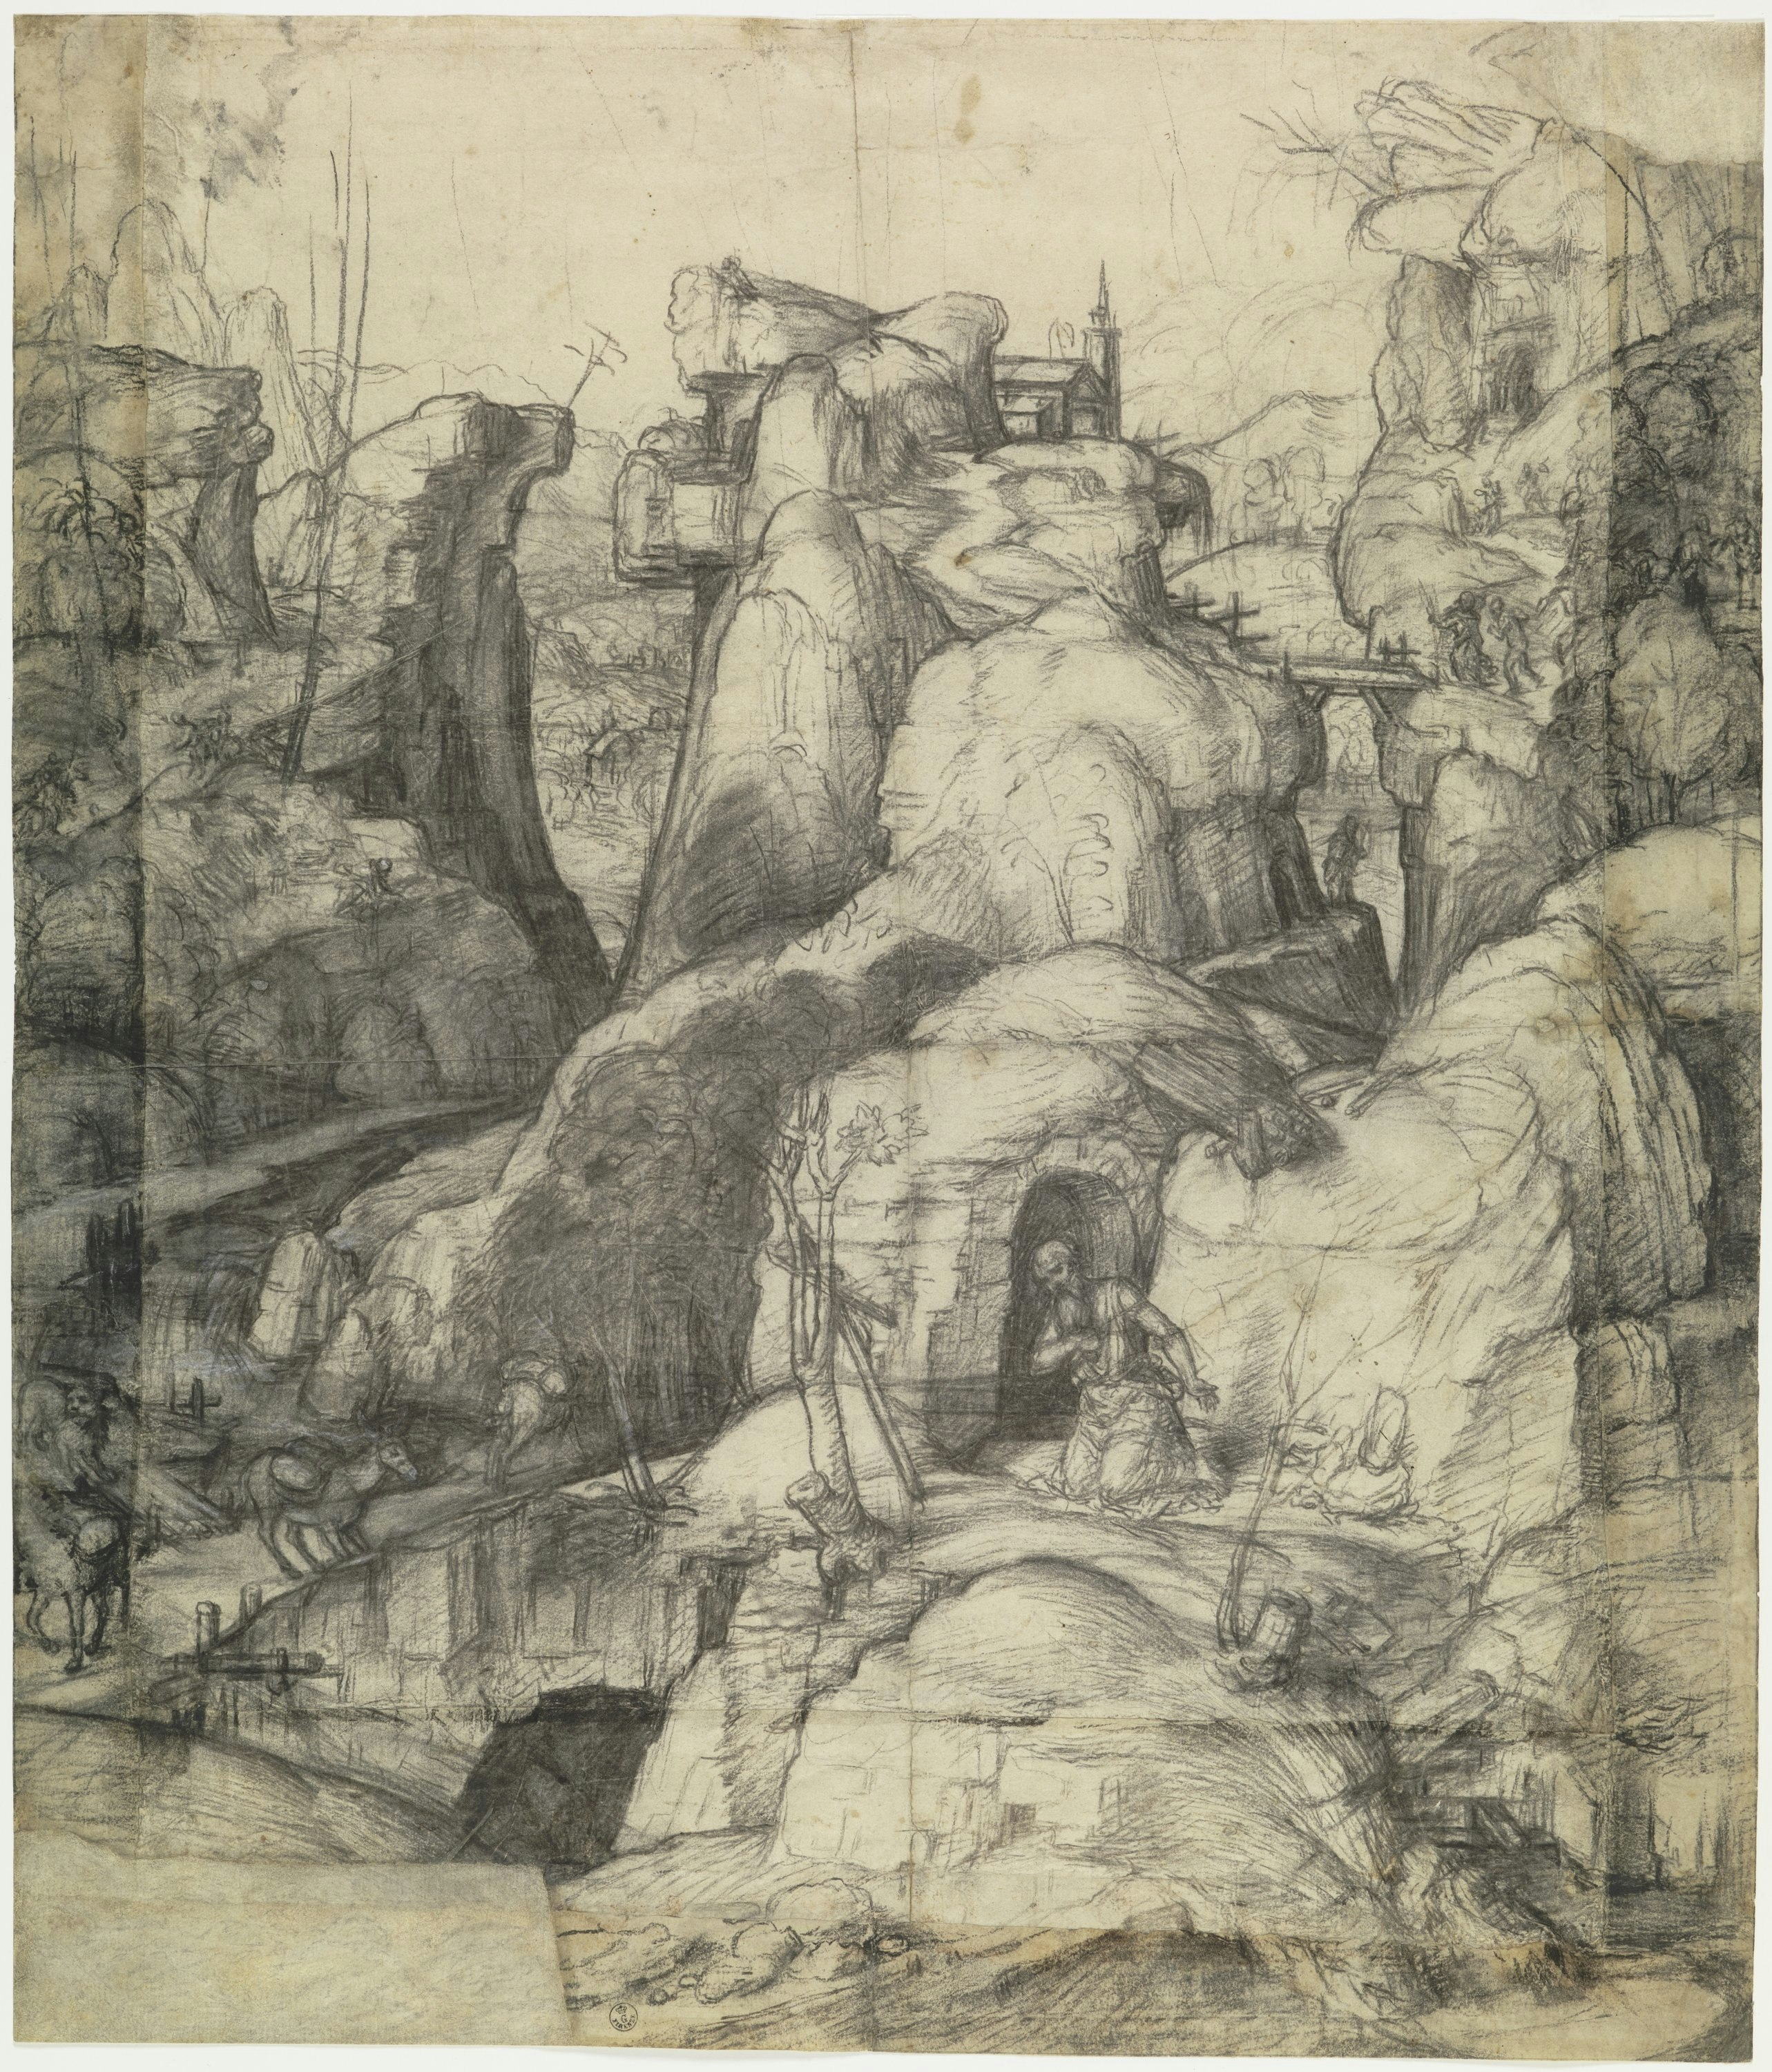 Saint Jerome in Penitence in a rocky landscape